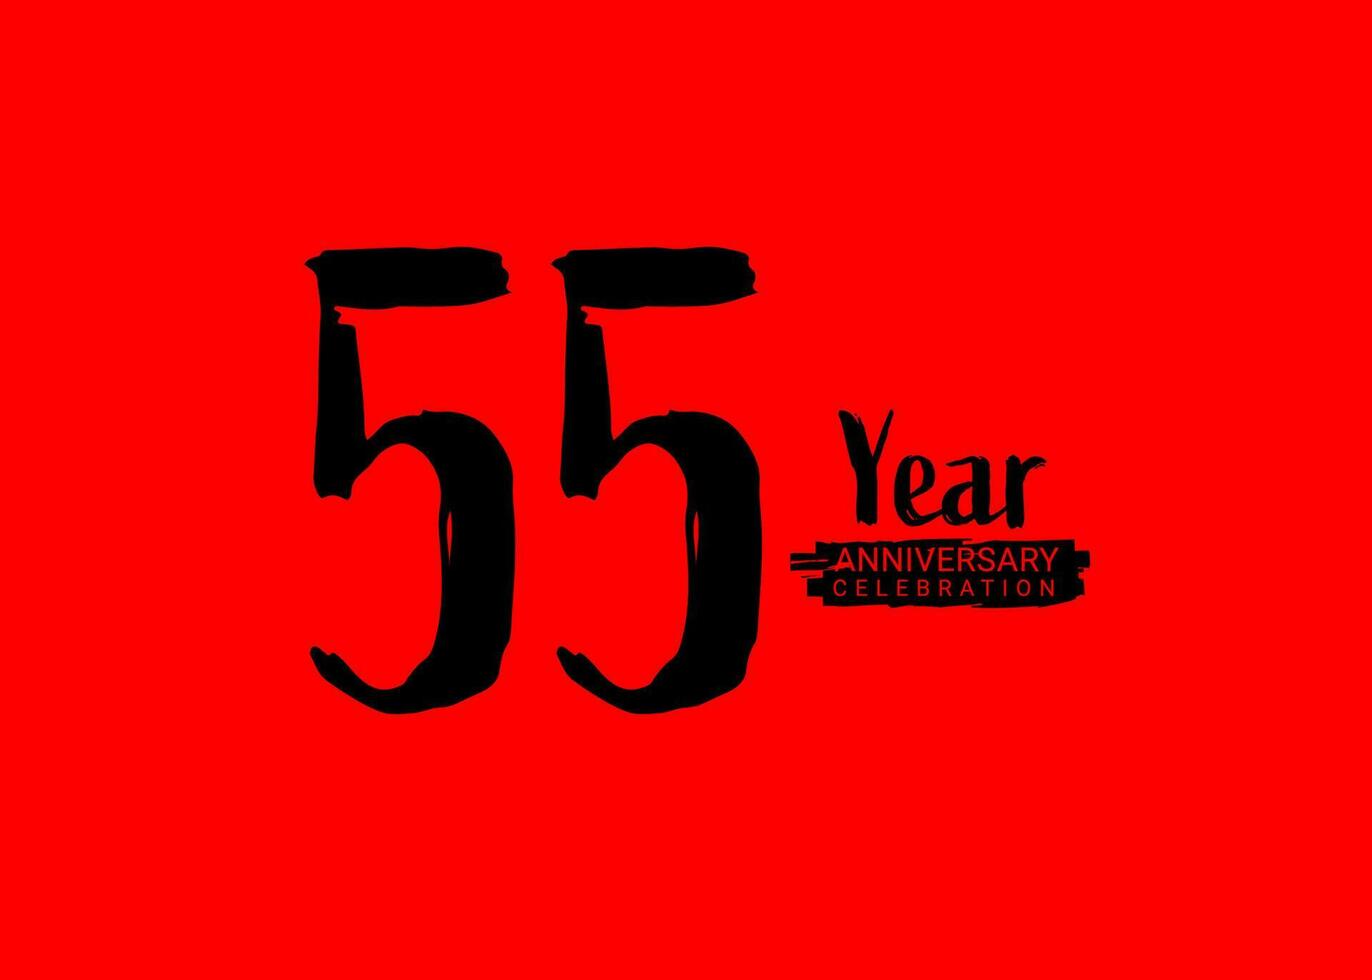 55 år årsdag firande logotyp på röd bakgrund, 55 siffra logotyp design, 55:e födelsedag logotyp, logotyp årsdag, vektor årsdag för firande, affisch, inbjudan kort